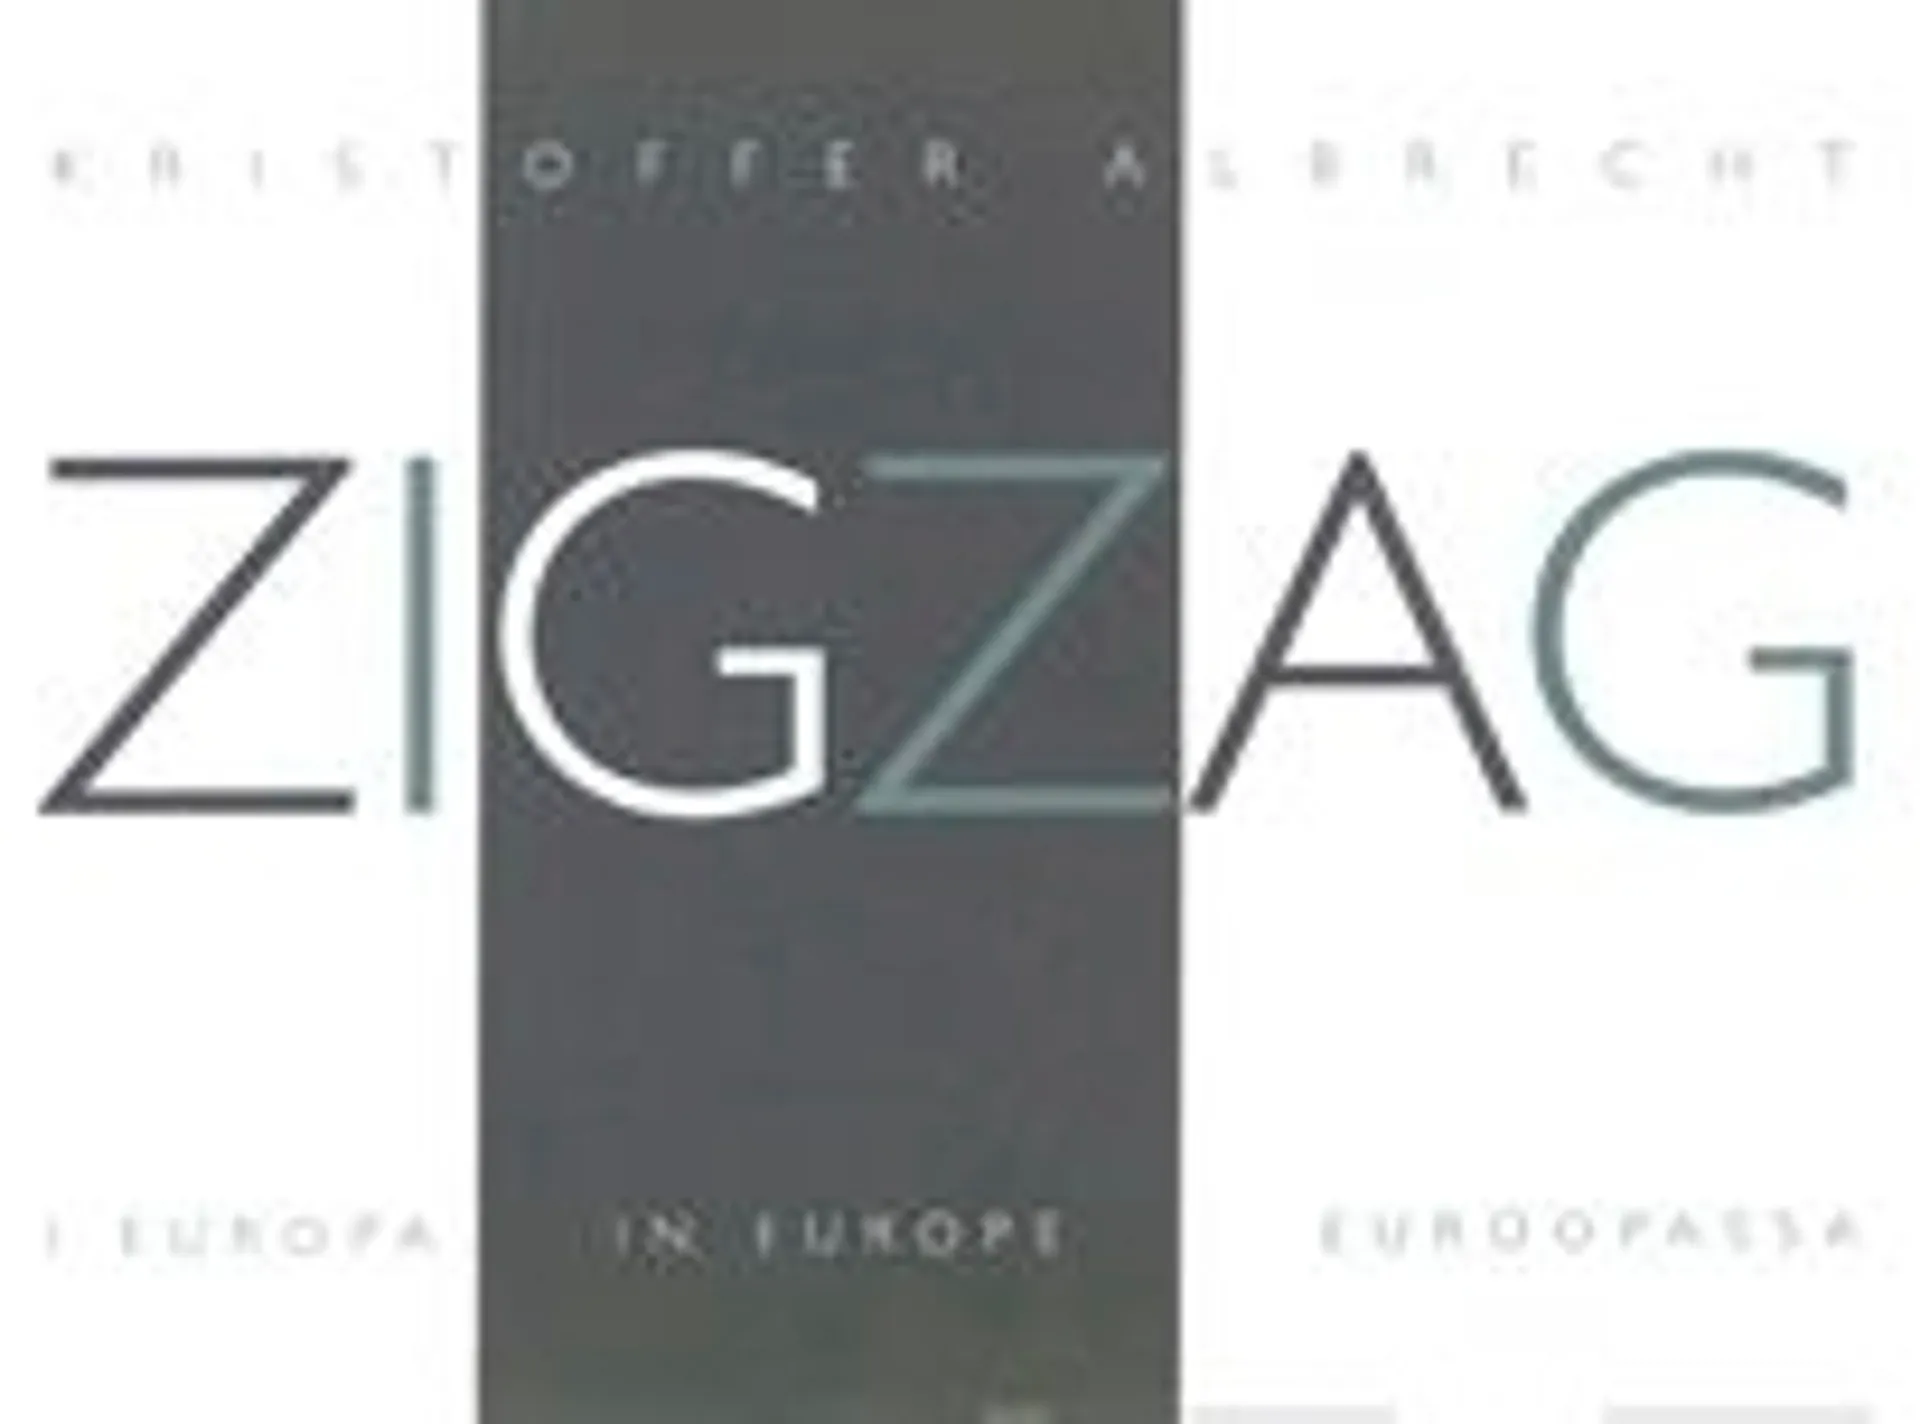 Albrecht, Zigzag in Europe